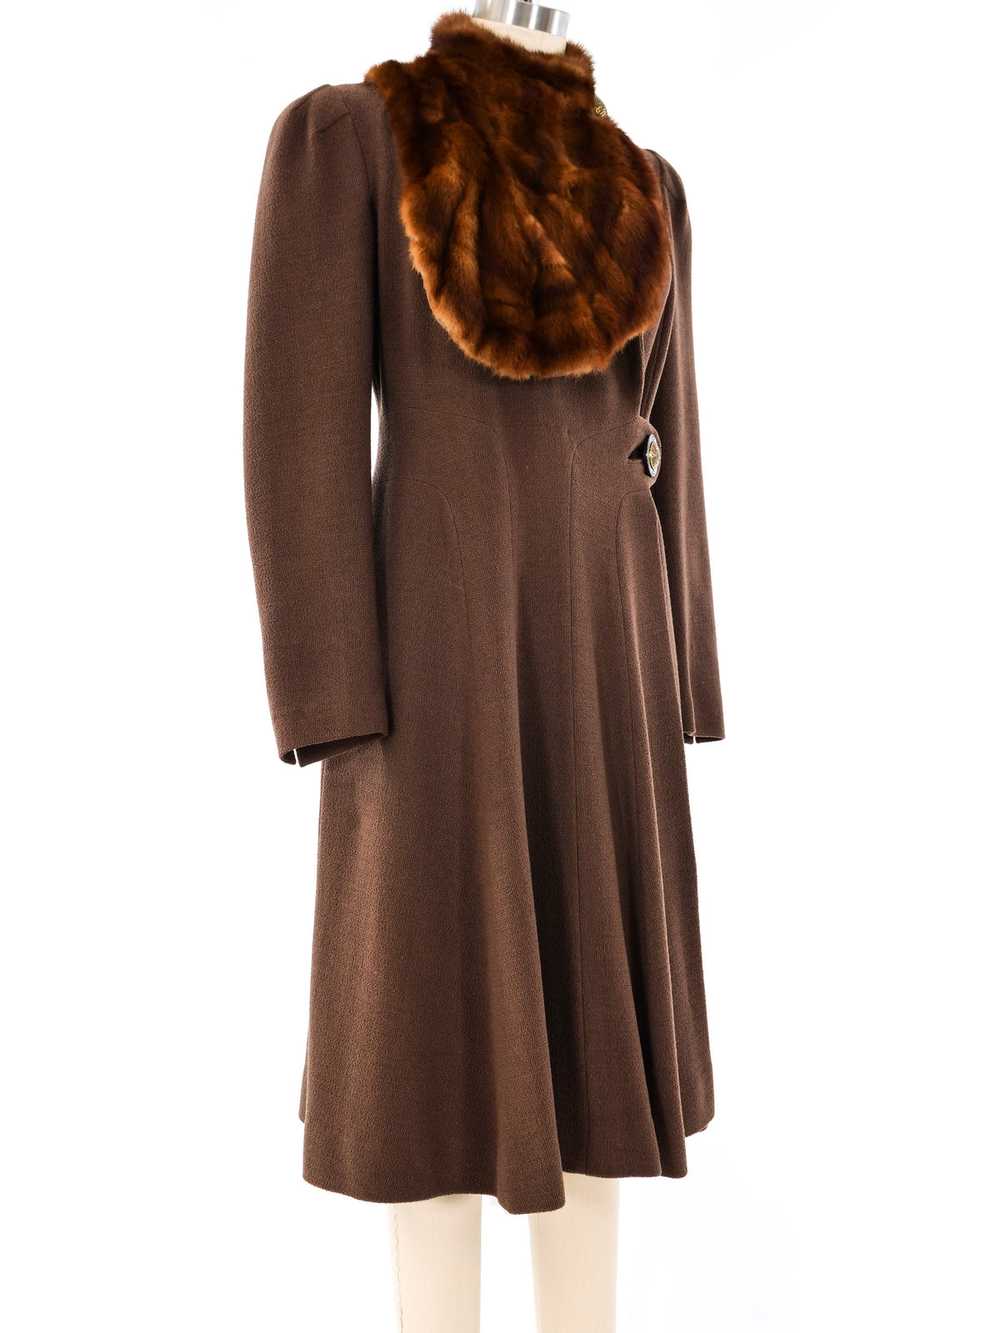 1940's Brown Coat With Fur Trim Bib - image 3